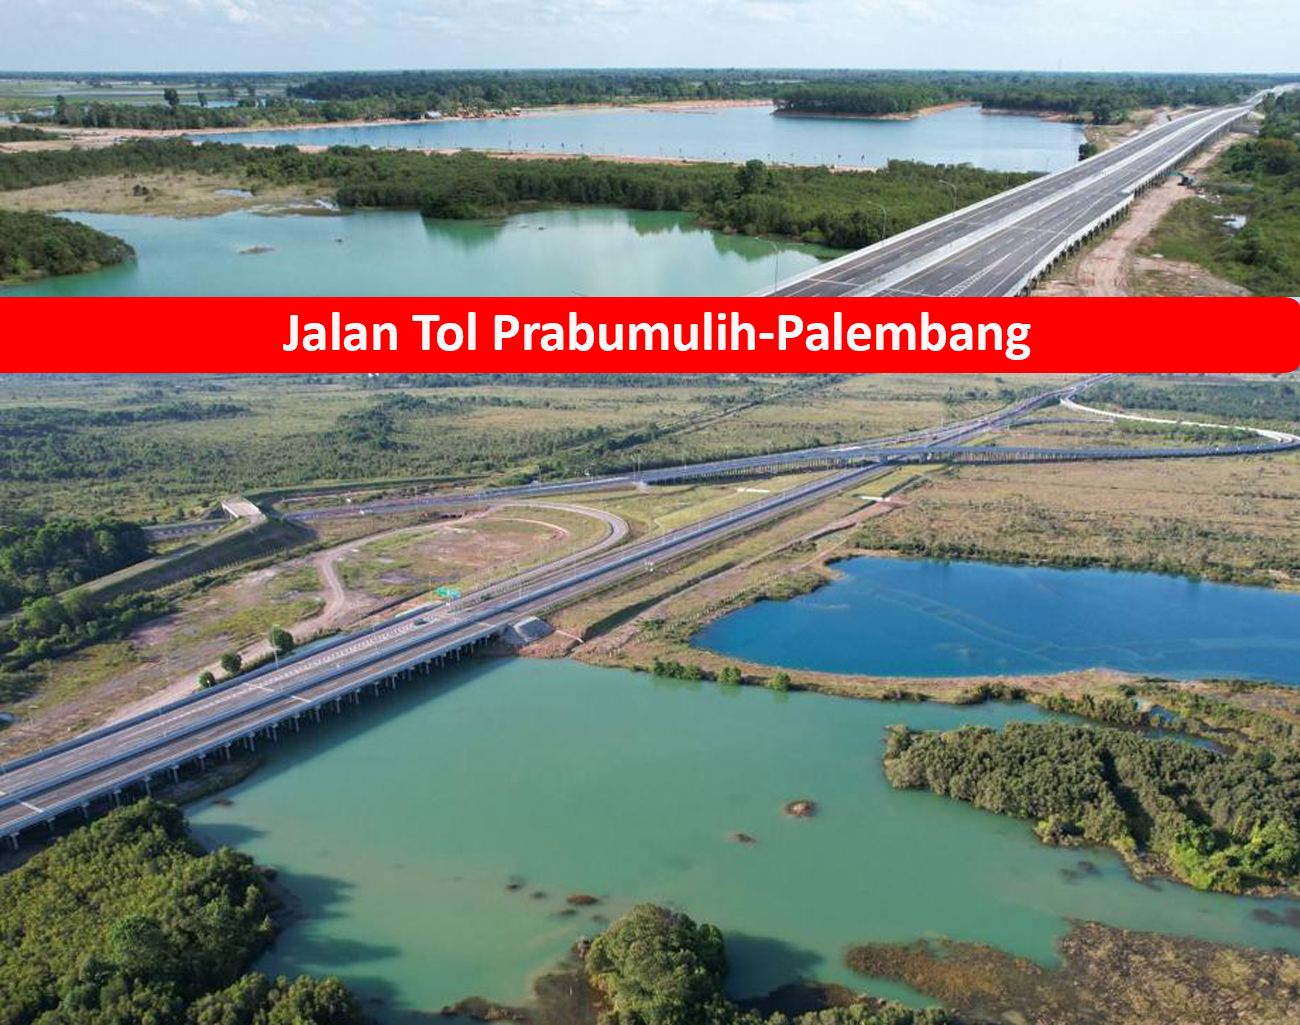 Lewat Jalan Tol Prabumulih-Palembang Biaya Kendaraan Habiskan Uang Rp1.000.000 Sekali Melintas